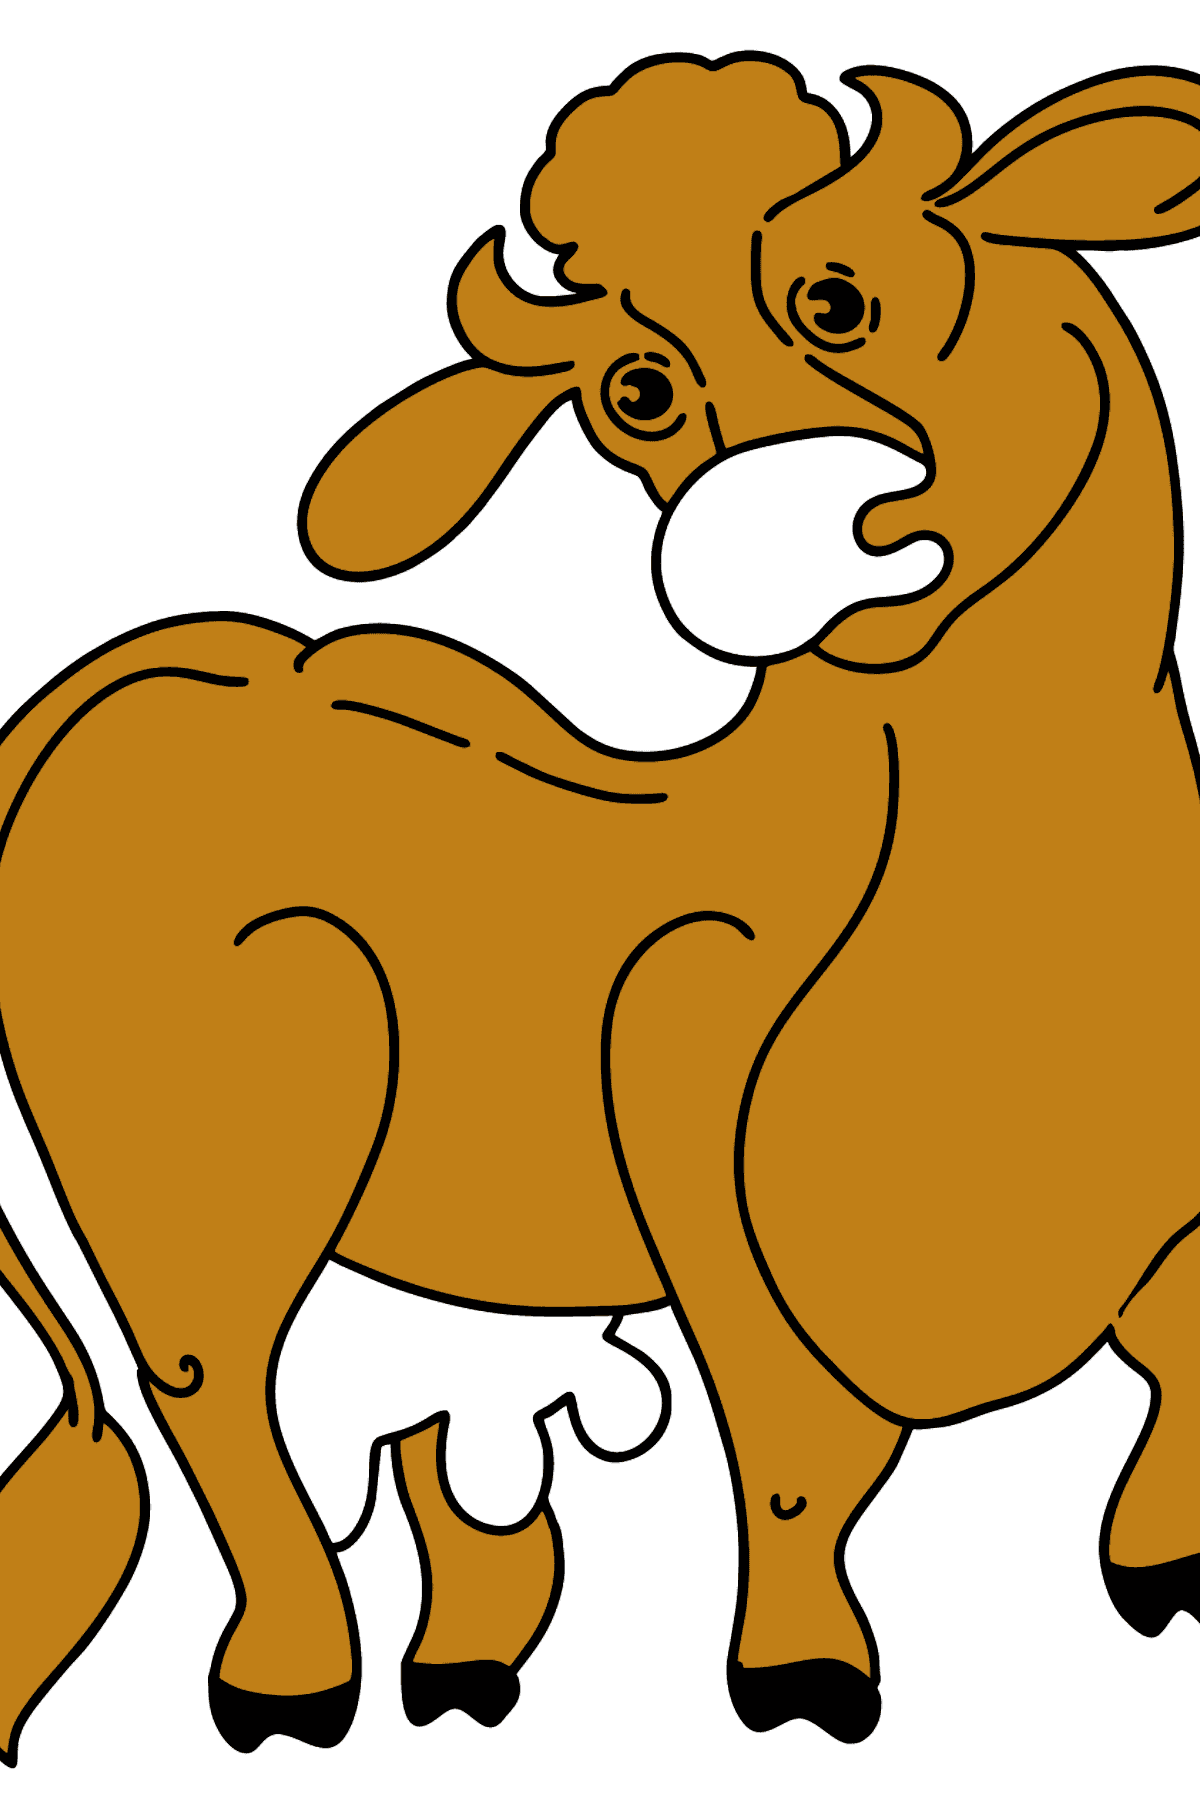 Dibujo de vaca para colorear - Dibujos para Colorear para Niños